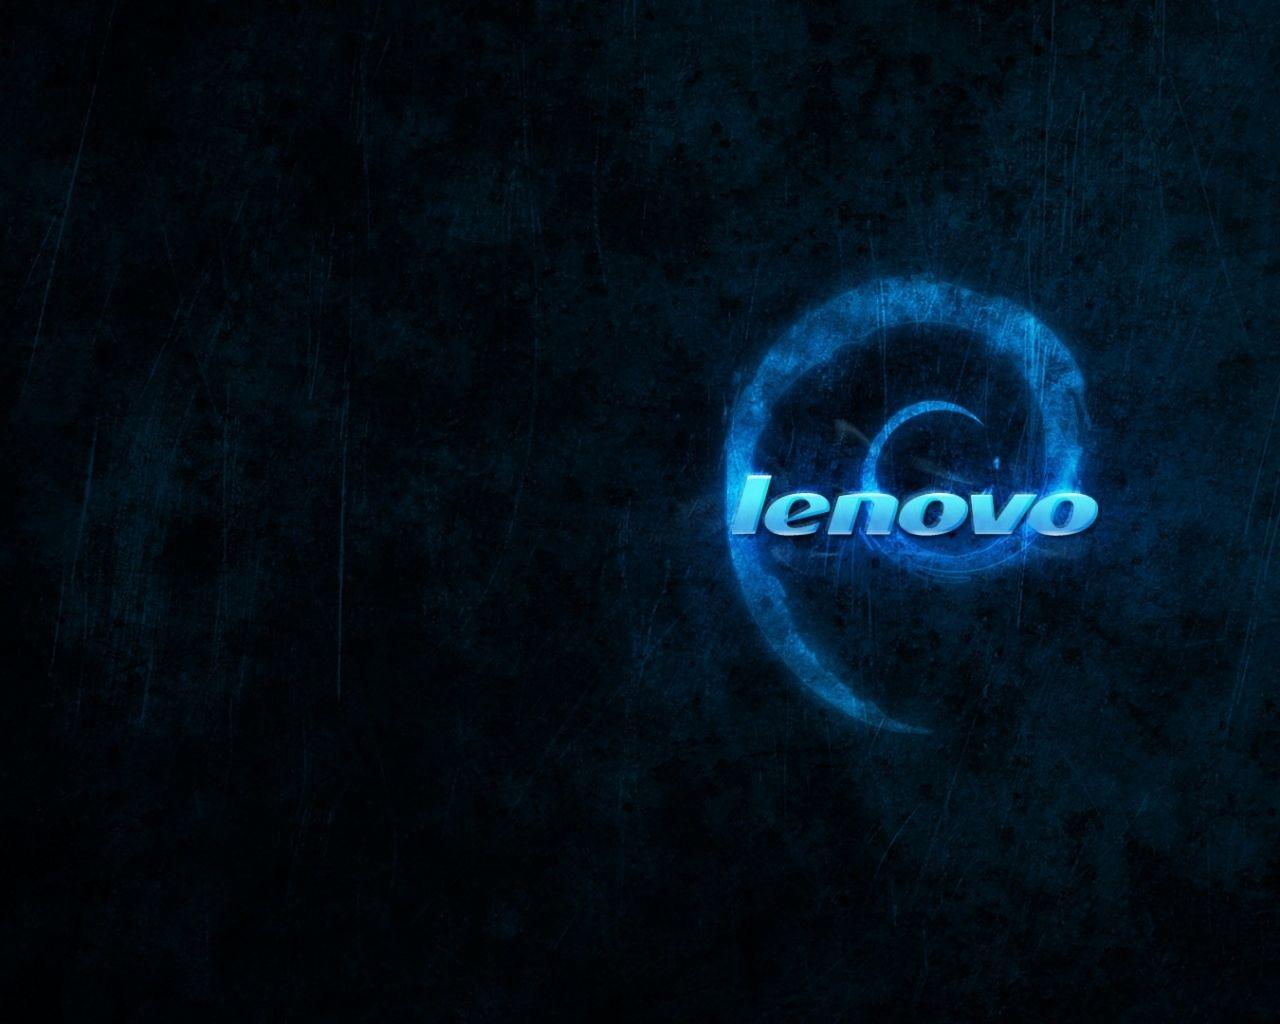 Lenovo 4K UHD Wallpapers - Top Free Lenovo 4K UHD Backgrounds ...